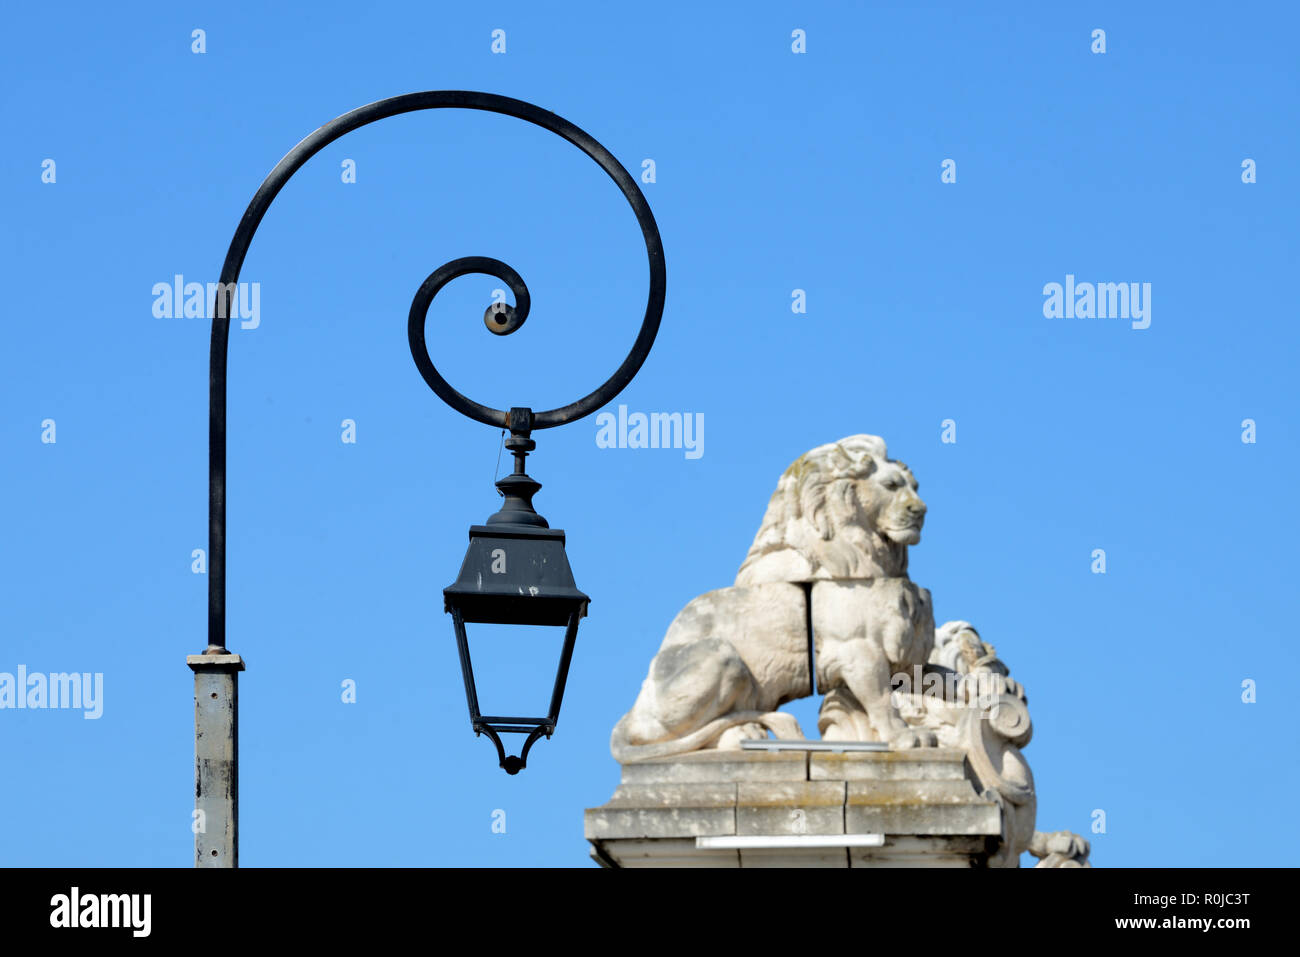 Las luces de la calle contemporáneo o lámparas y leones tallados en piedra en la cima de las columnas o el antiguo puente colgante sobre el río Rhône en Arles Provence Francia Foto de stock